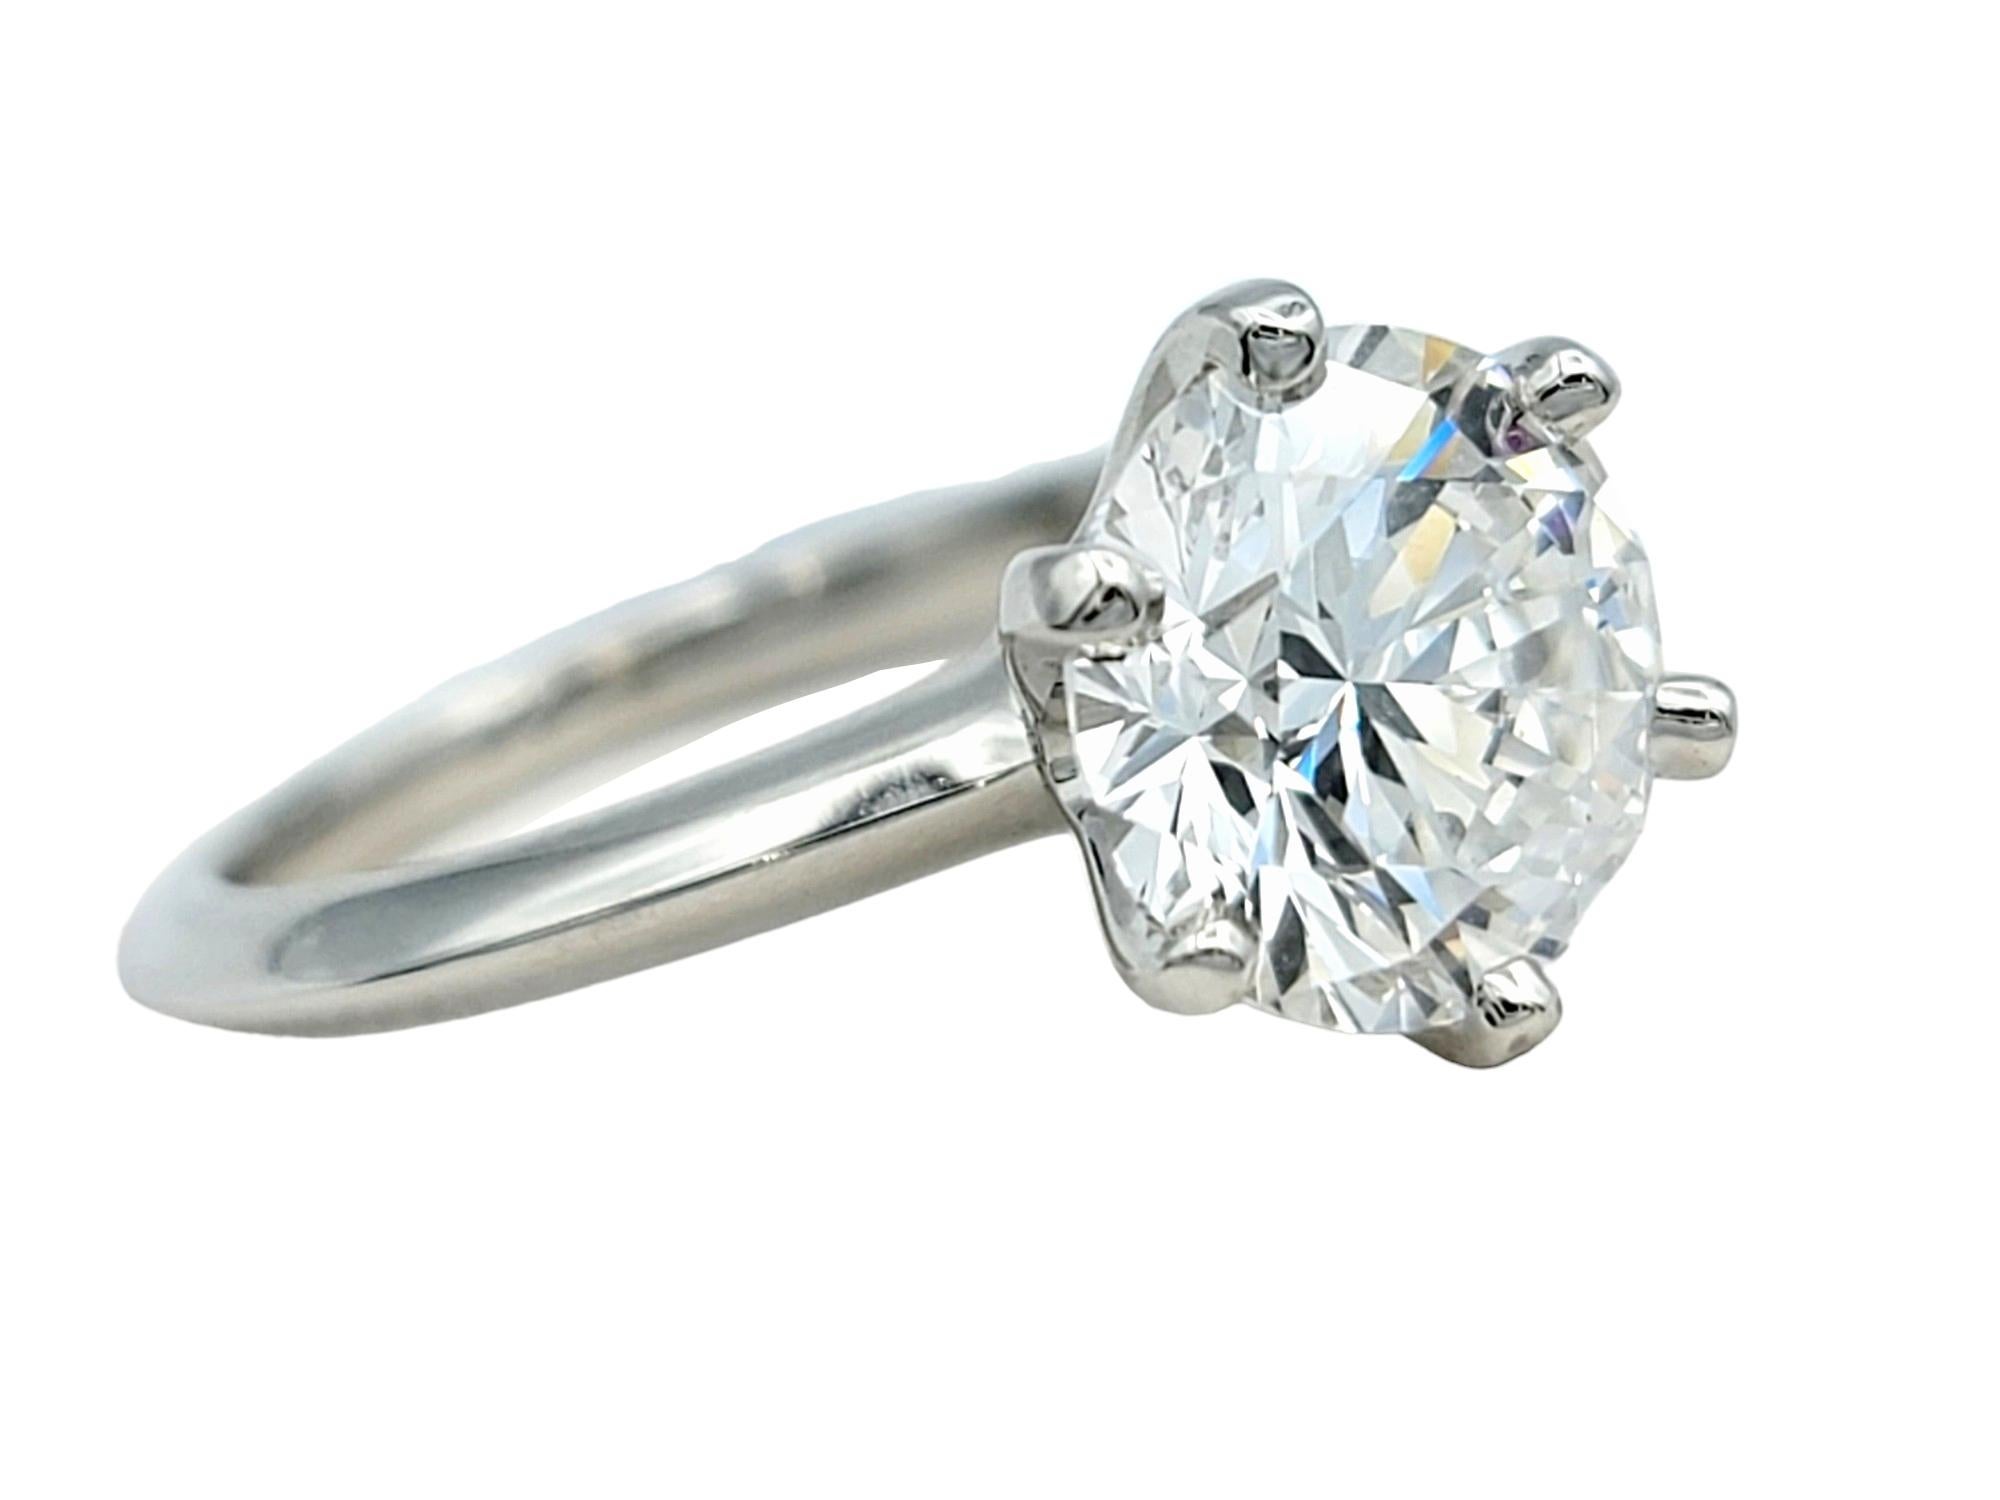 Ringgröße: 5

Sagen Sie JA zu diesem unglaublichen diamantenen Solitär-Verlobungsring von Tiffany & Co.! Dieser bezaubernde Ring ist der Inbegriff des klassischen Tiffany-Verlobungsrings mit seinem großen runden Diamanten und dem schlanken,